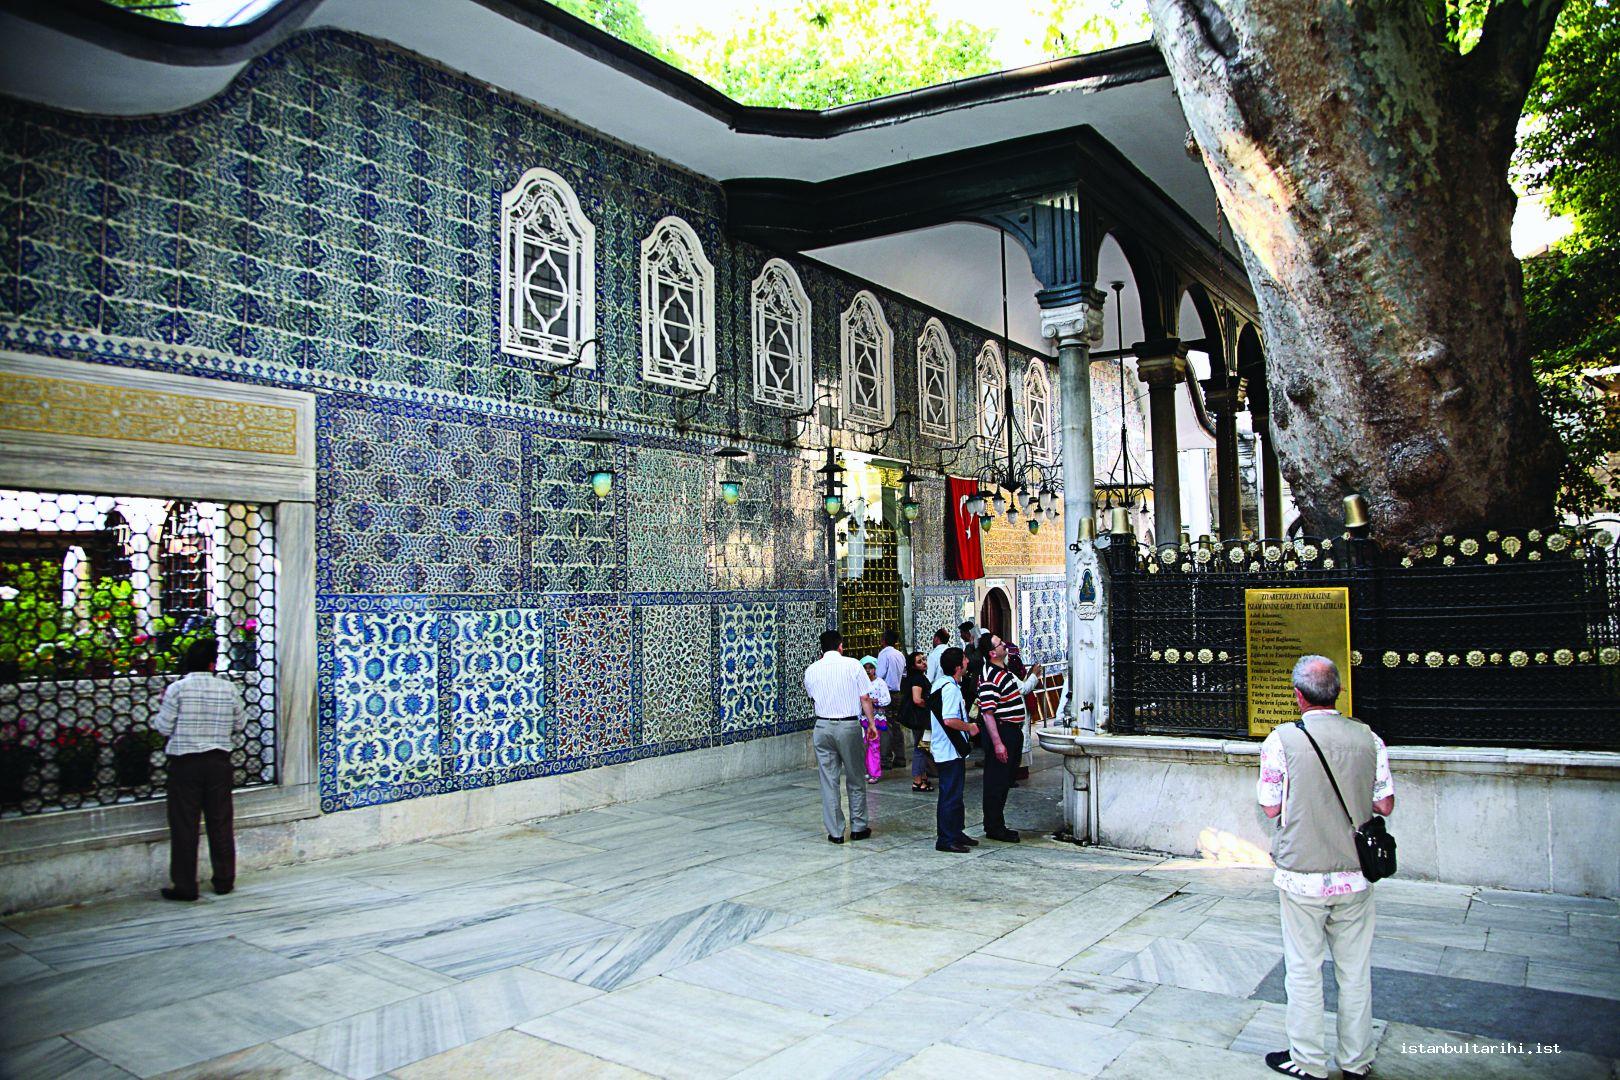 22- The tomb of Abu Ayyub al-Ansari